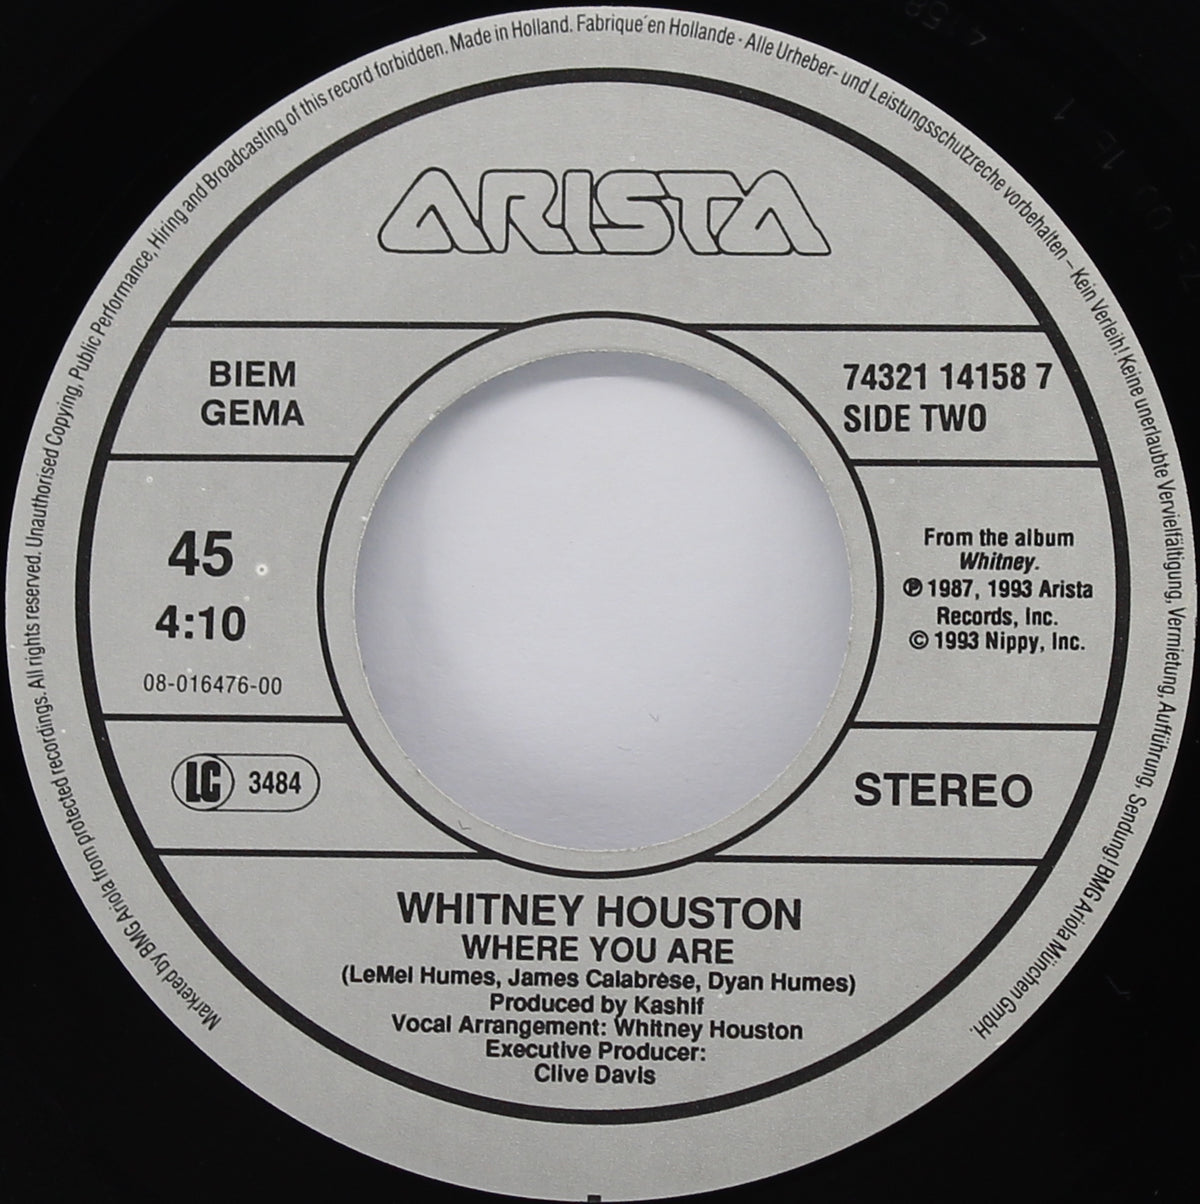 Whitney Houston ‎– I Have Nothing, Vinyl, 7&quot; Single 45rpm, Europe 1992